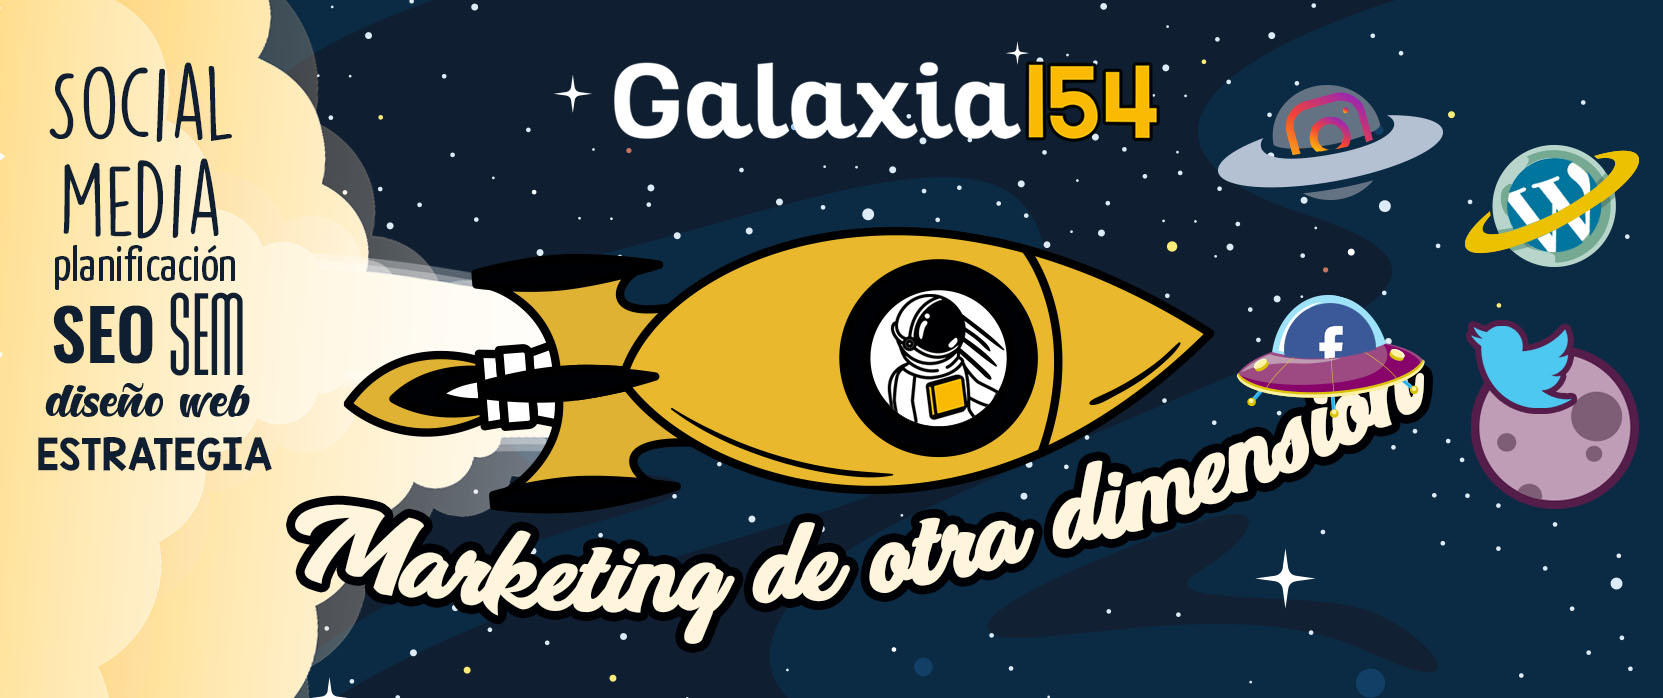 galaxia154 marketing digital